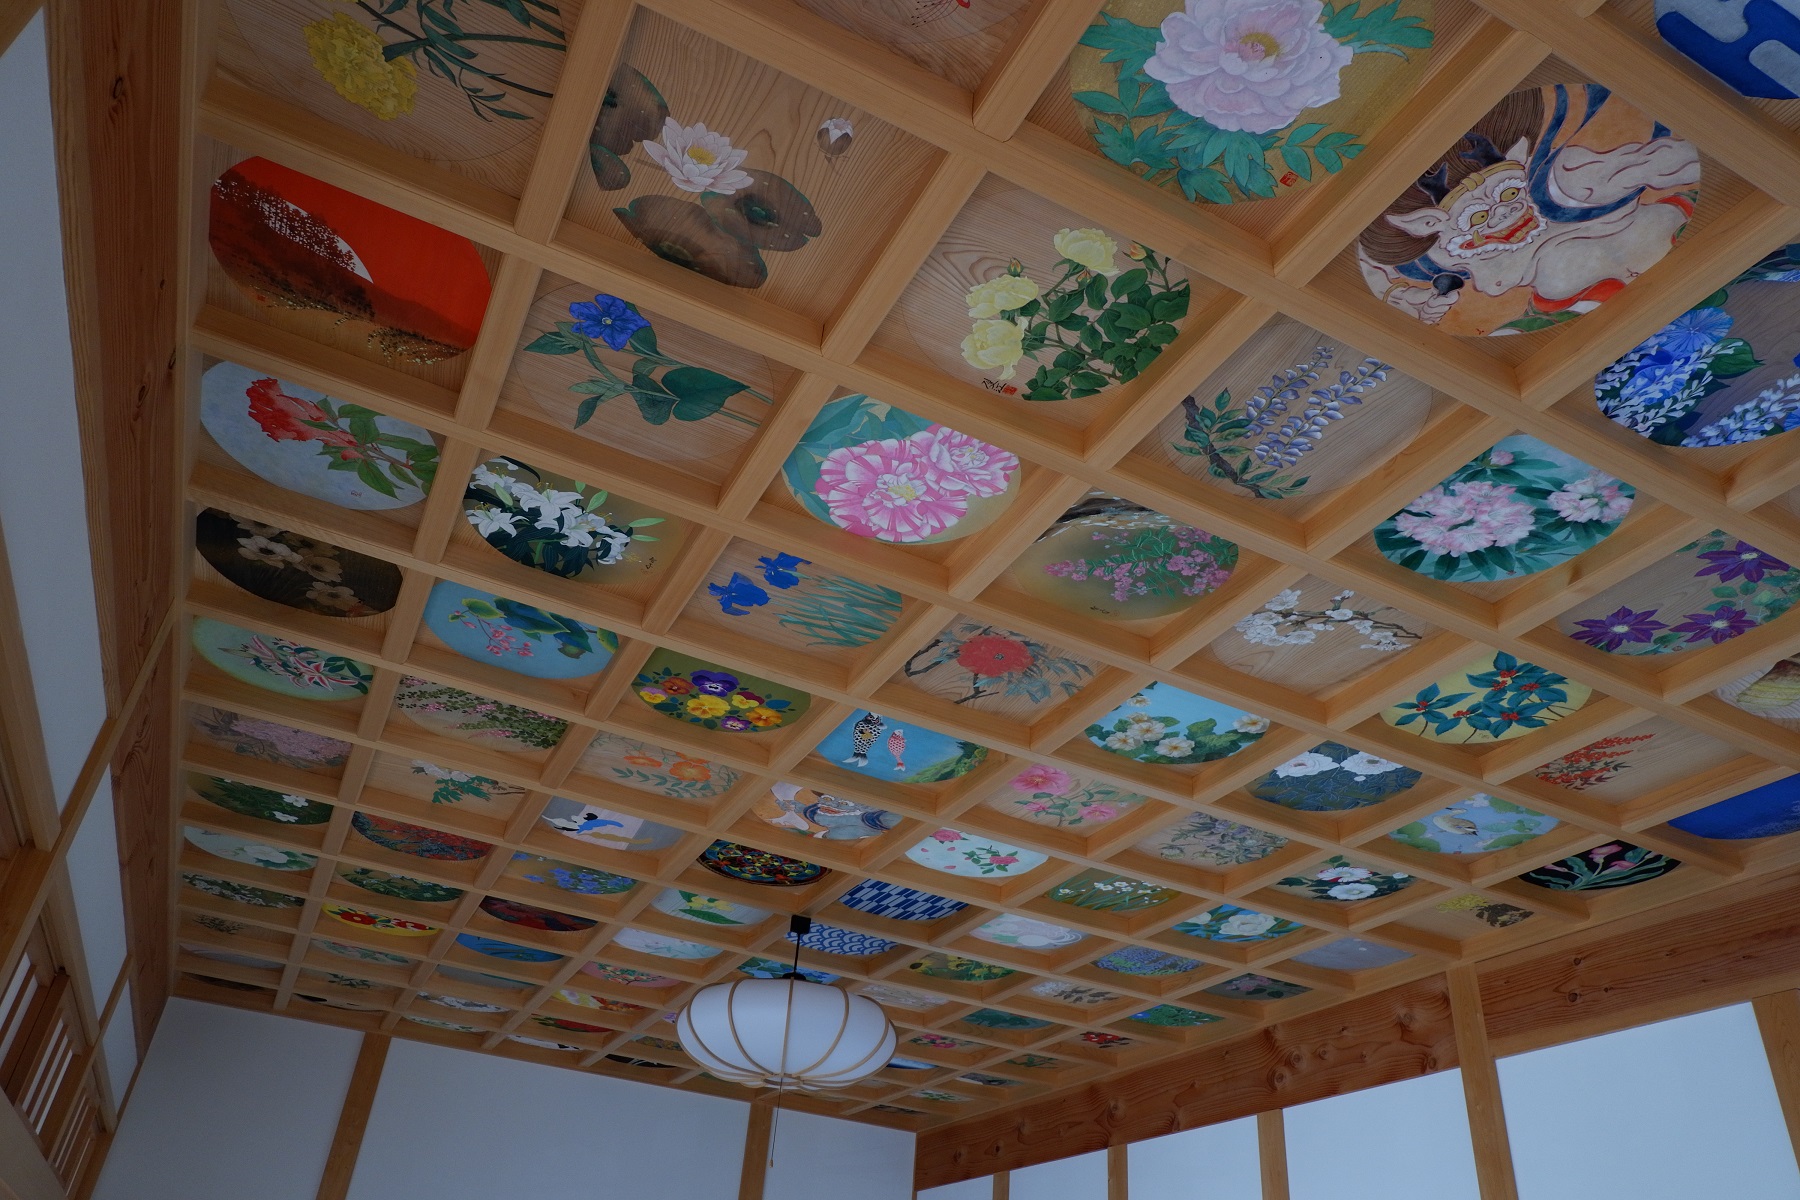 客殿の天井には160枚の絵があって、とても美しい